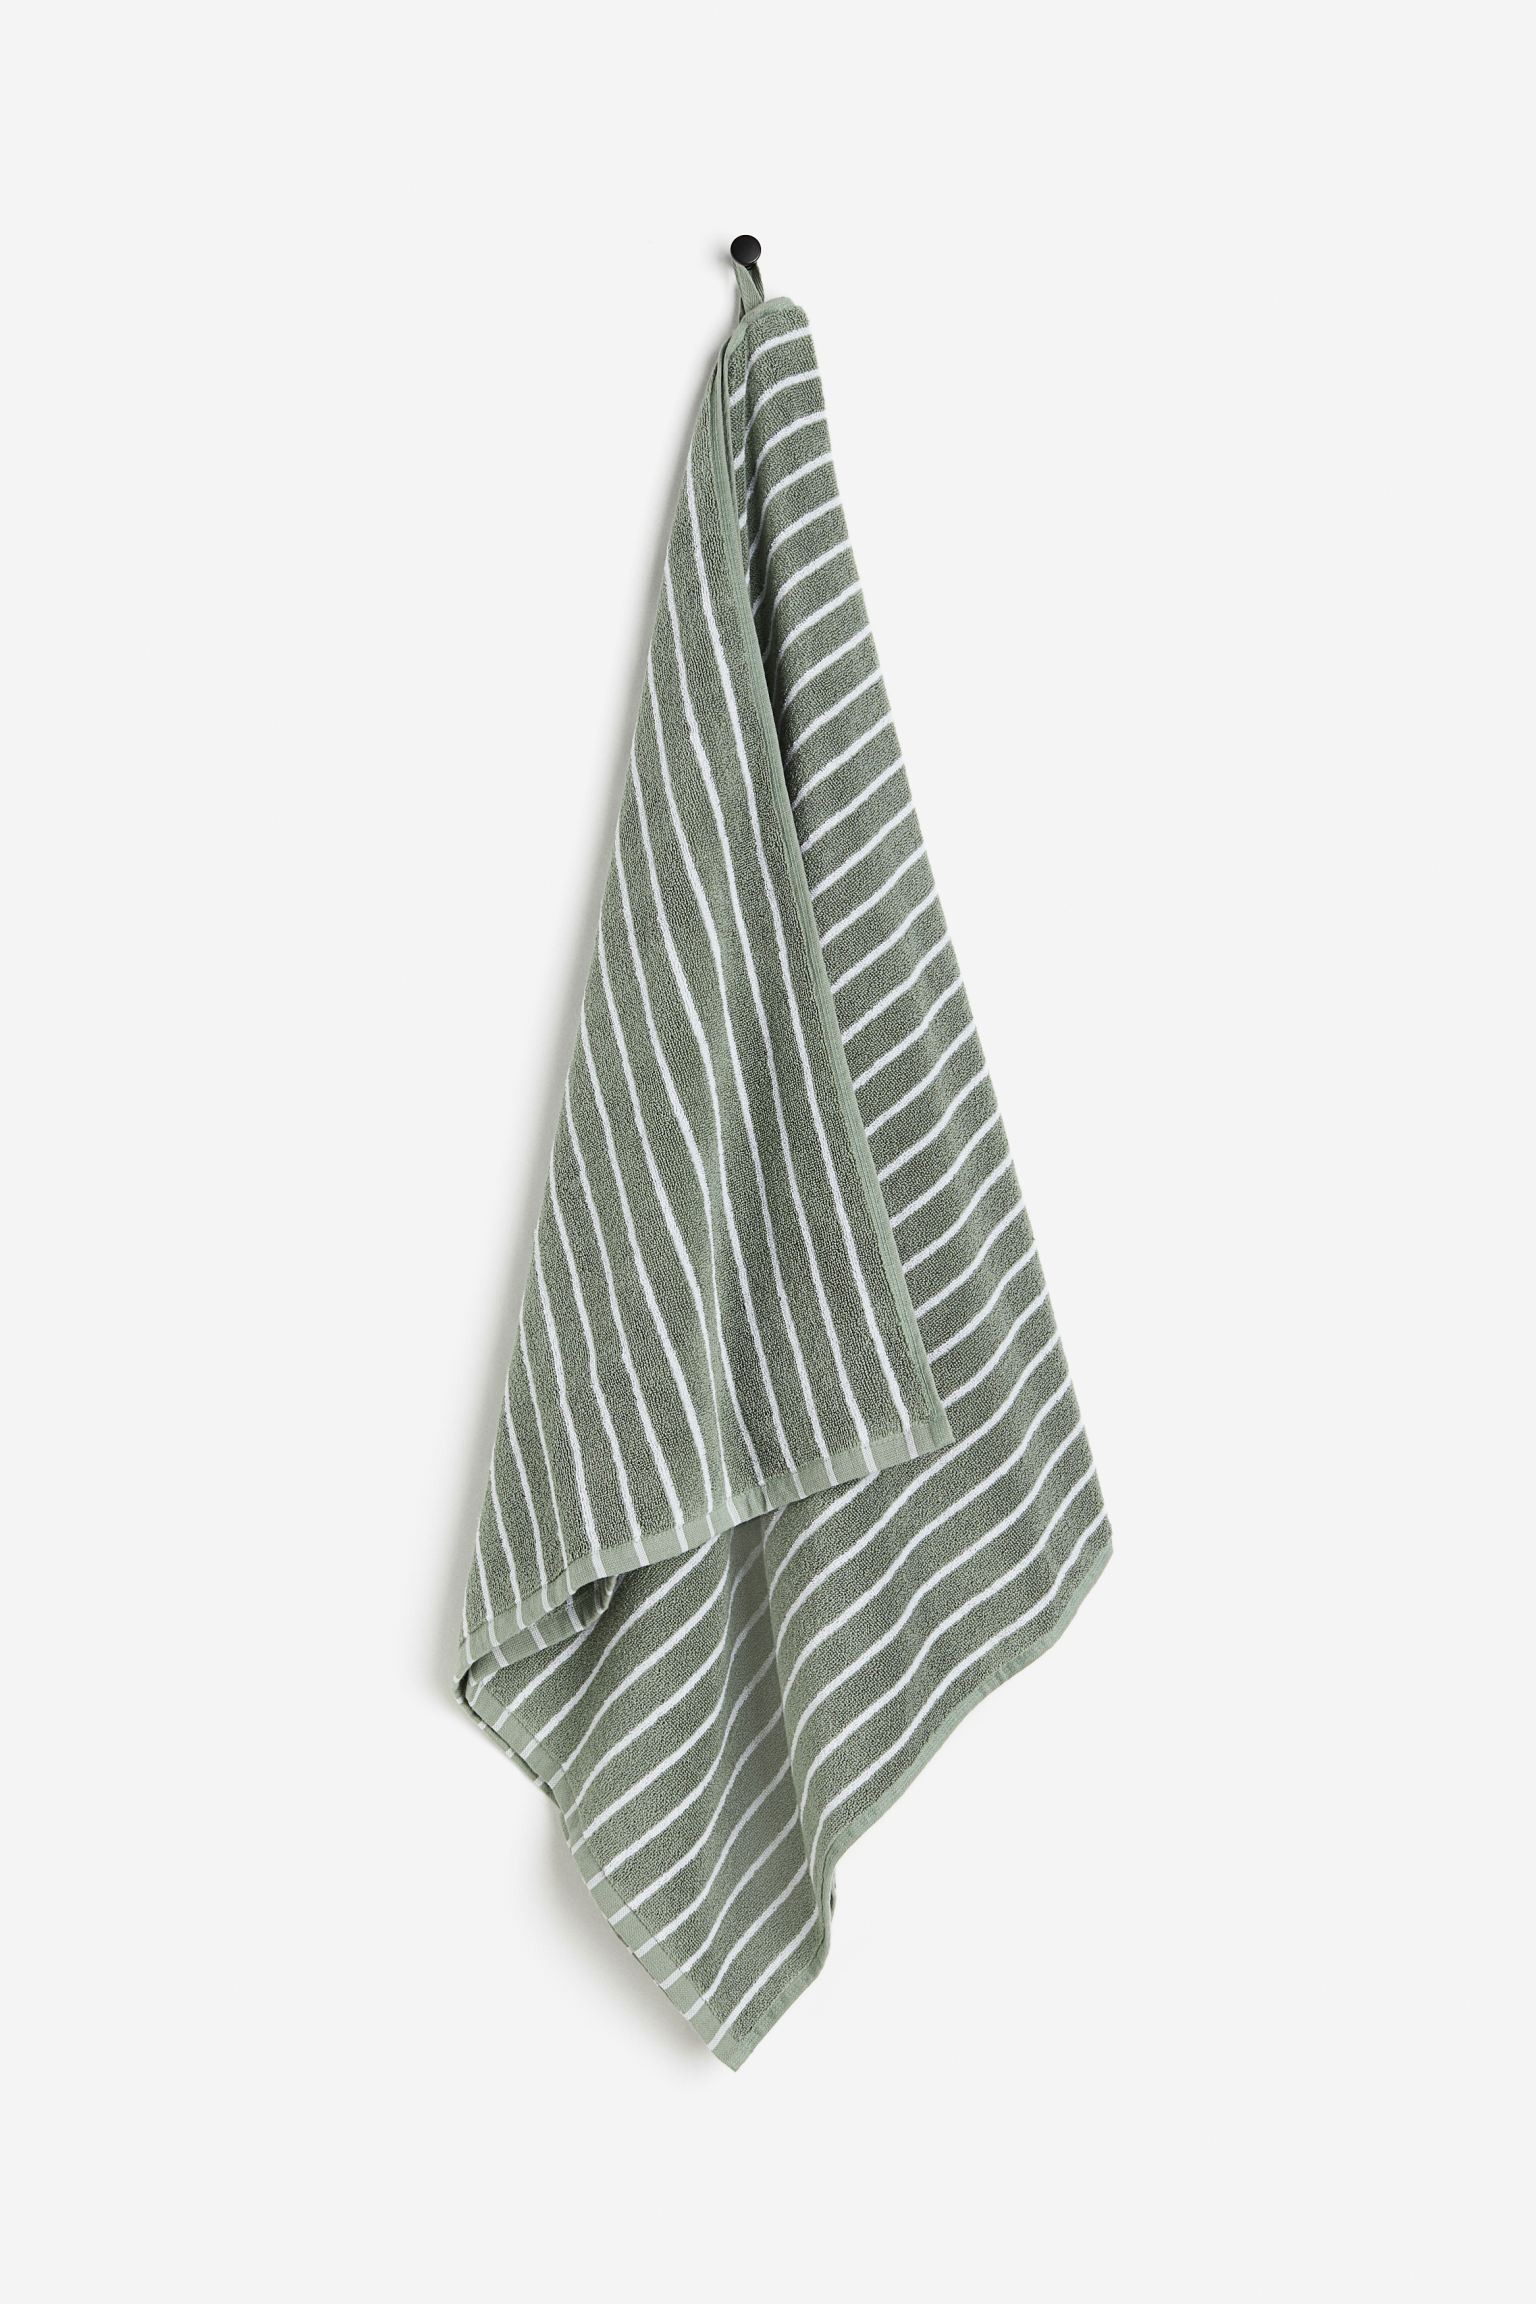 H&M Home Банний рушник в смужки, Шавлія зелена/смугаста, 70x140 1177356001 | 1177356001